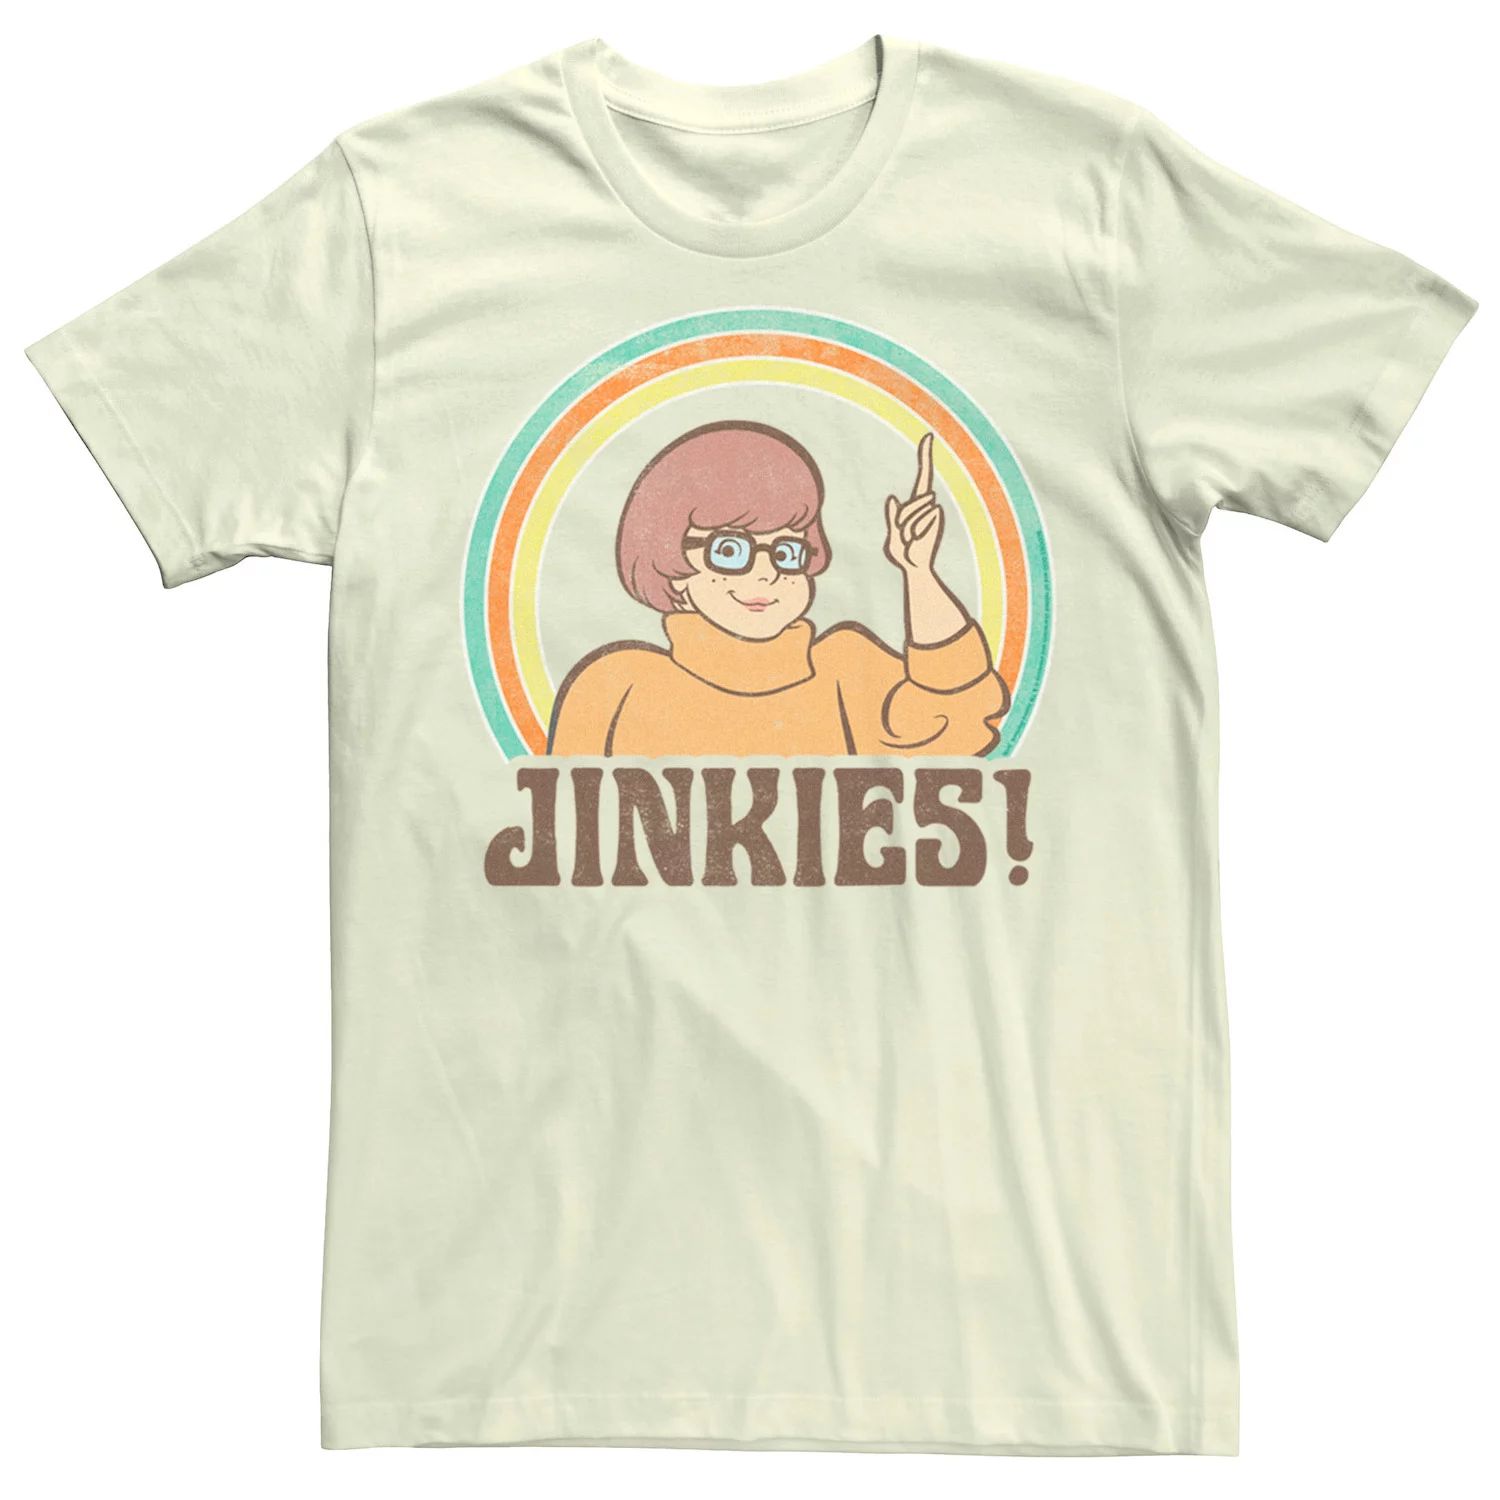 Мужская футболка Scooby Doo Jinkies Velma с рисунком портрета Licensed Character мужская футболка с коротким рукавом scooby doo velma jinkies fifth sun